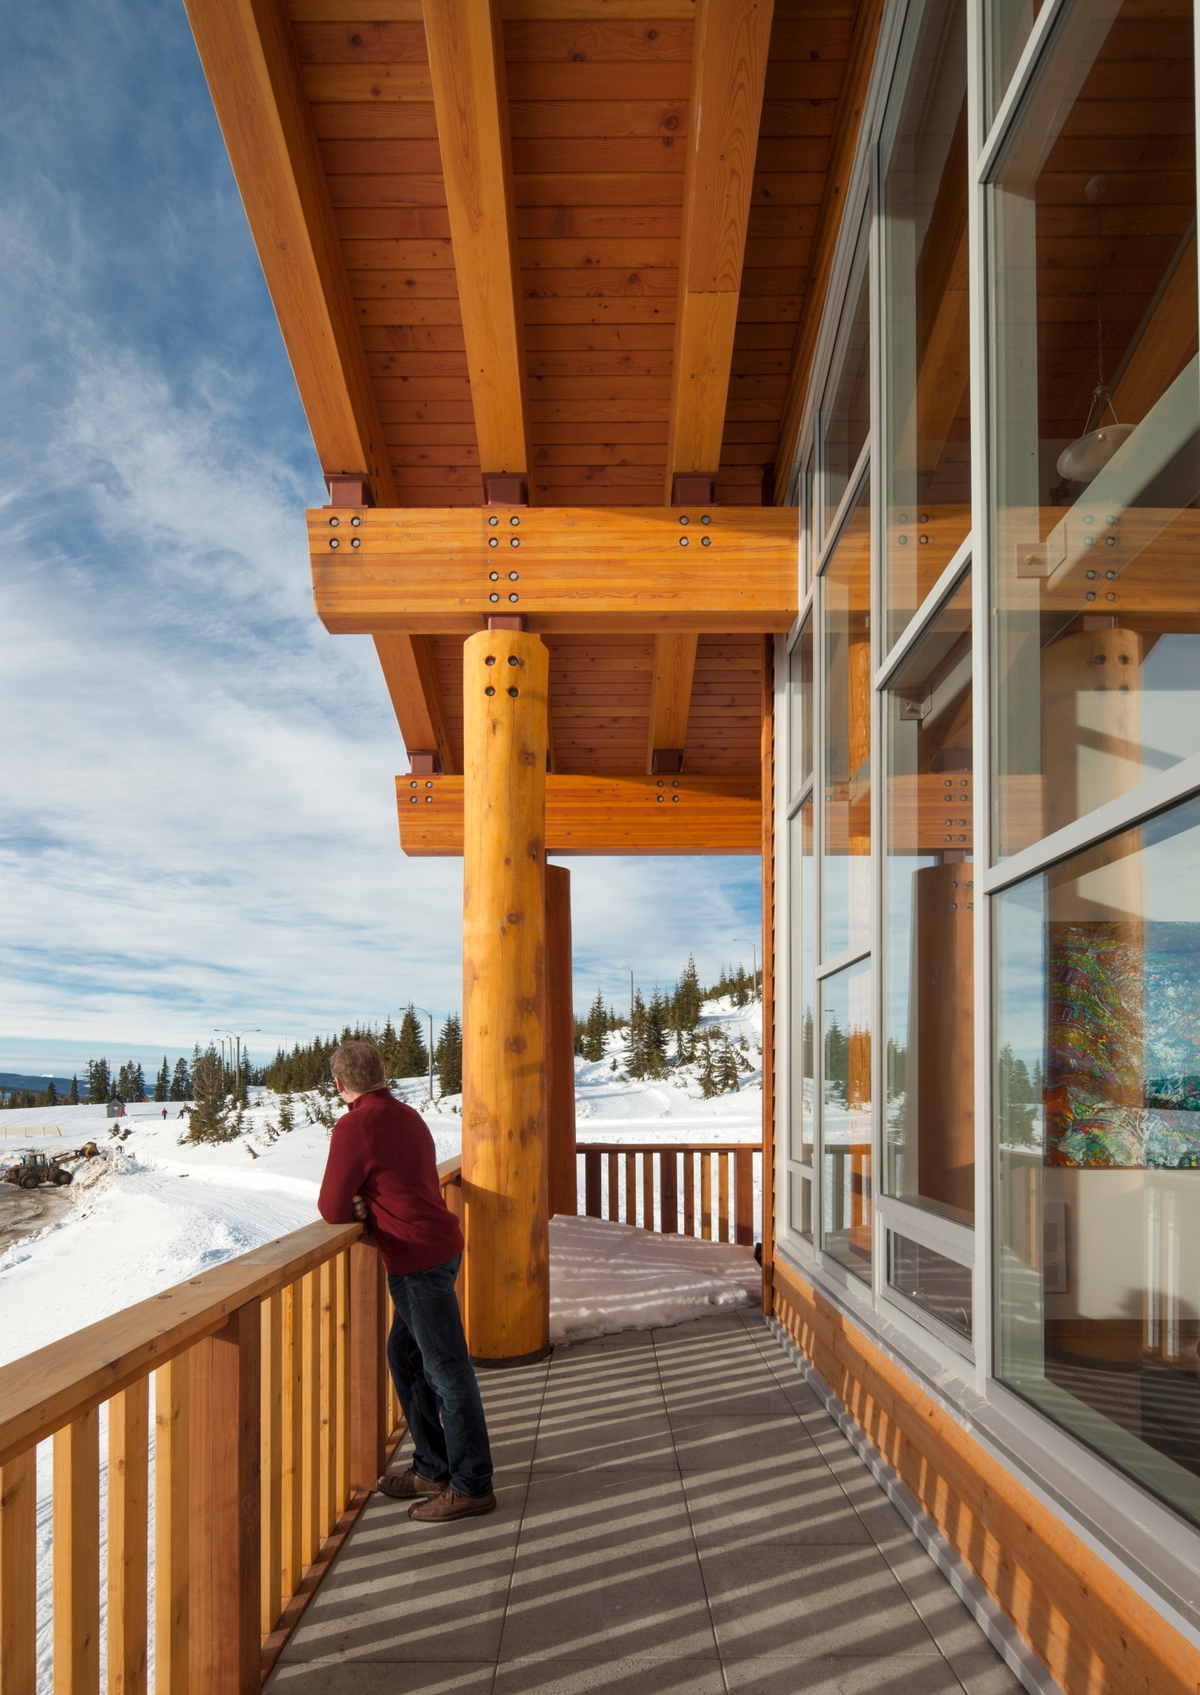 胶合木(胶合木)梁、木墙板和拱脚、实锯重型木材垂直杆柱、多维度木材扶手和栏杆都显示在温哥华岛山中心占据外部阳台的雪天阳光图像中